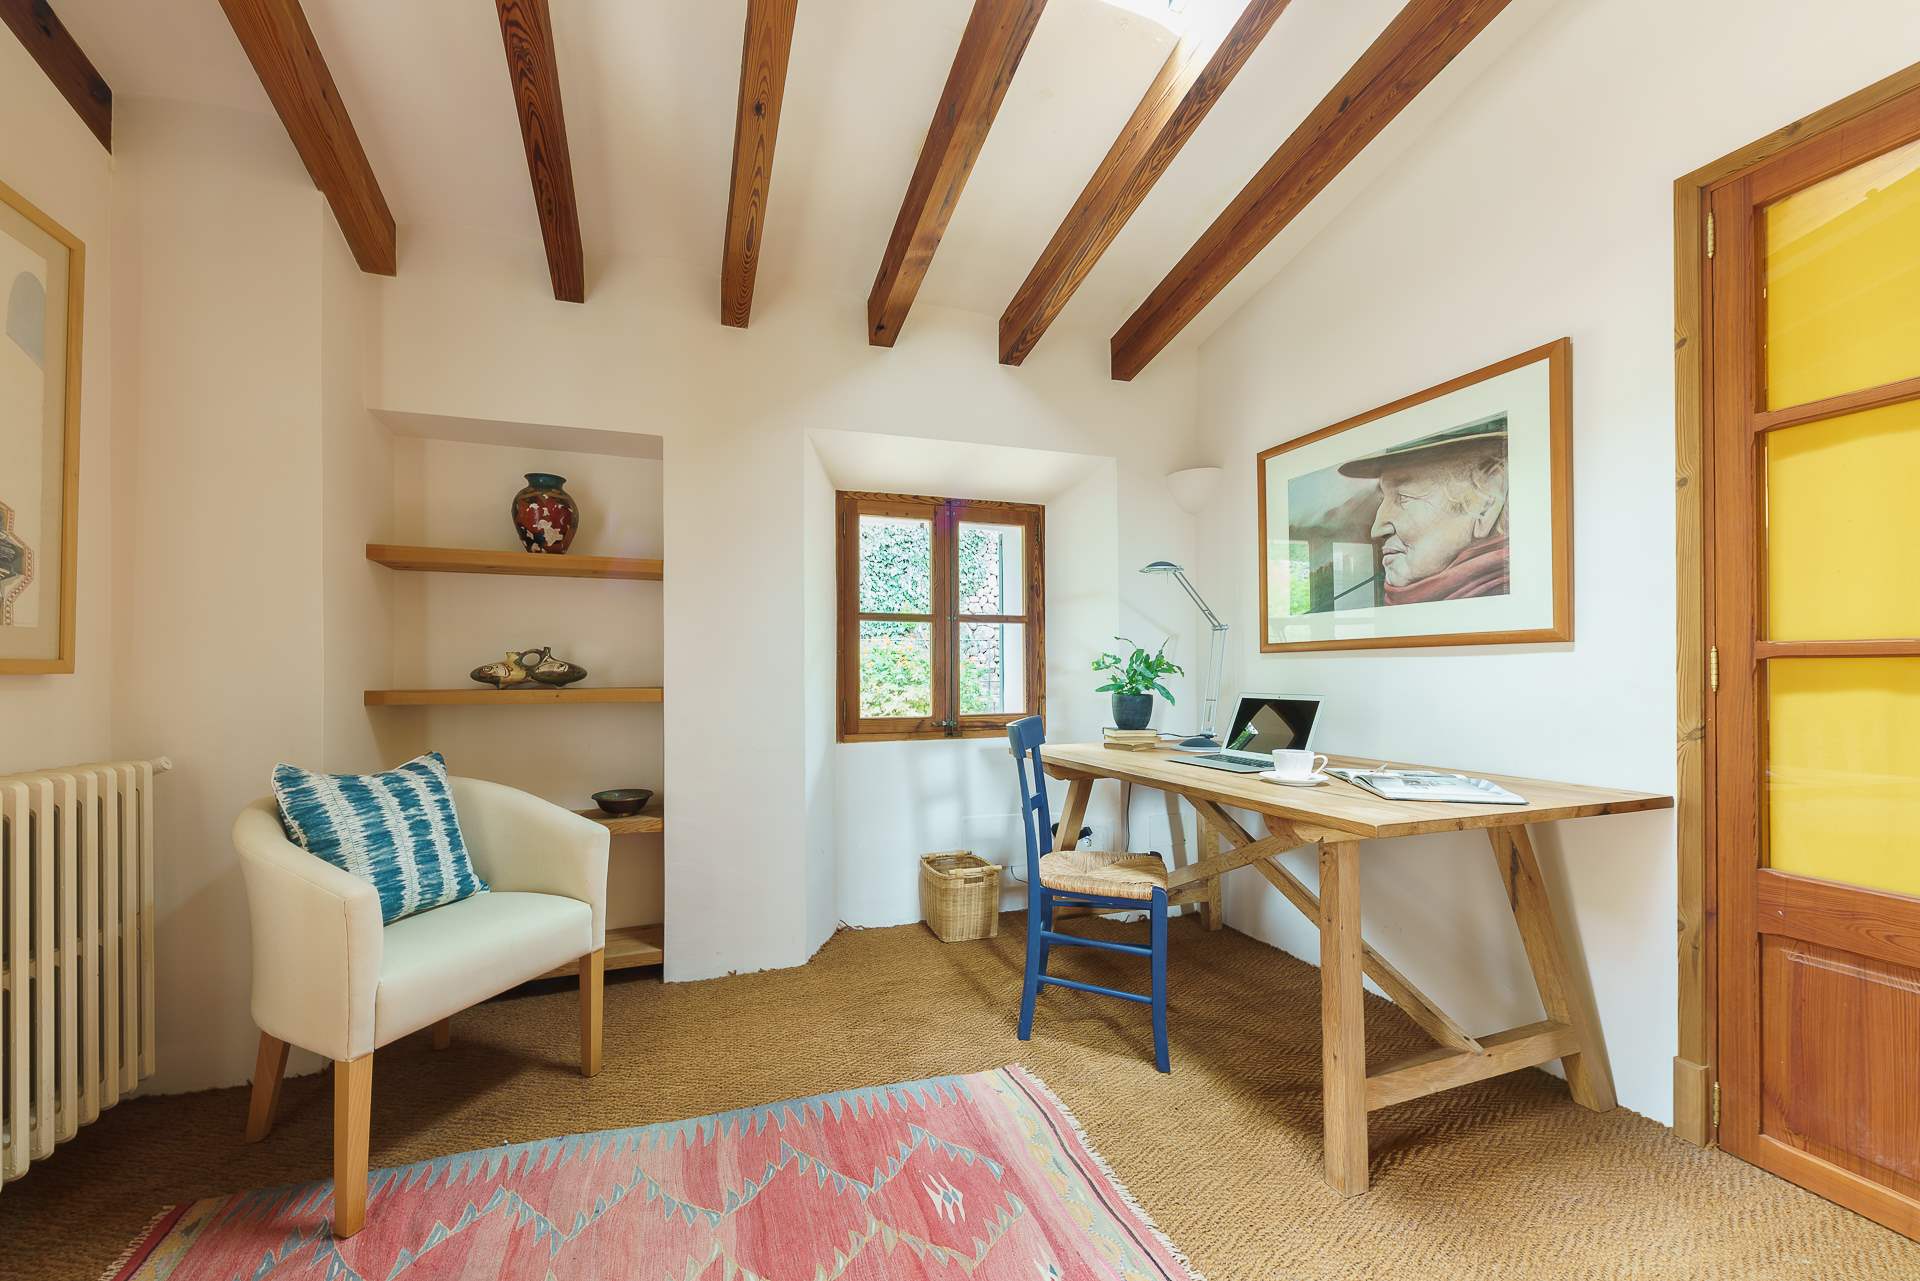 Sa Tanca, 3 Bedroom Rental, 3 bedroom villa in Soller & Deia, Majorca Photo #21